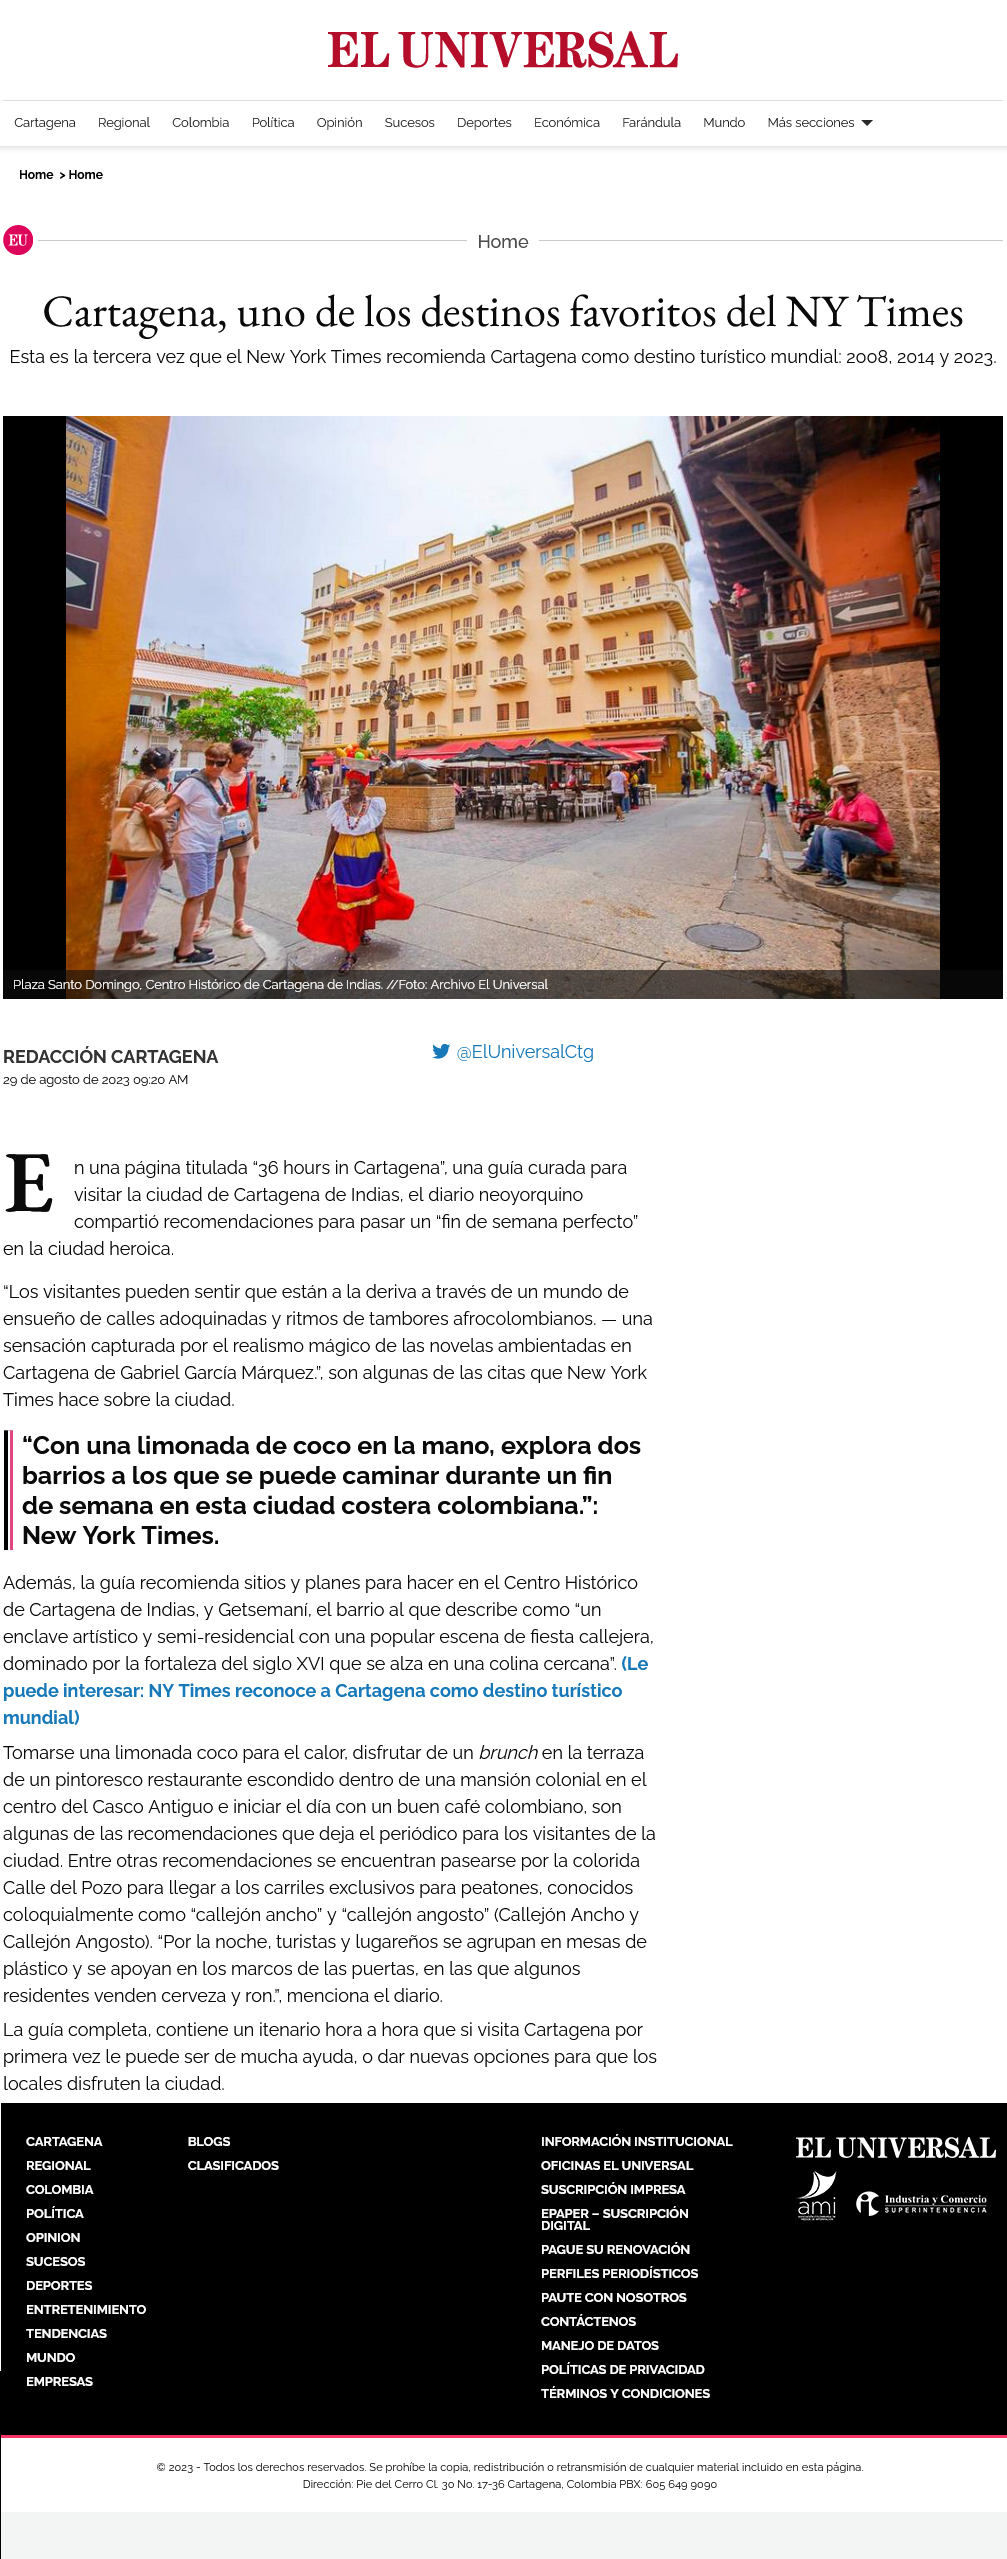 Cartagena, uno de los destinos favoritos del NY Times